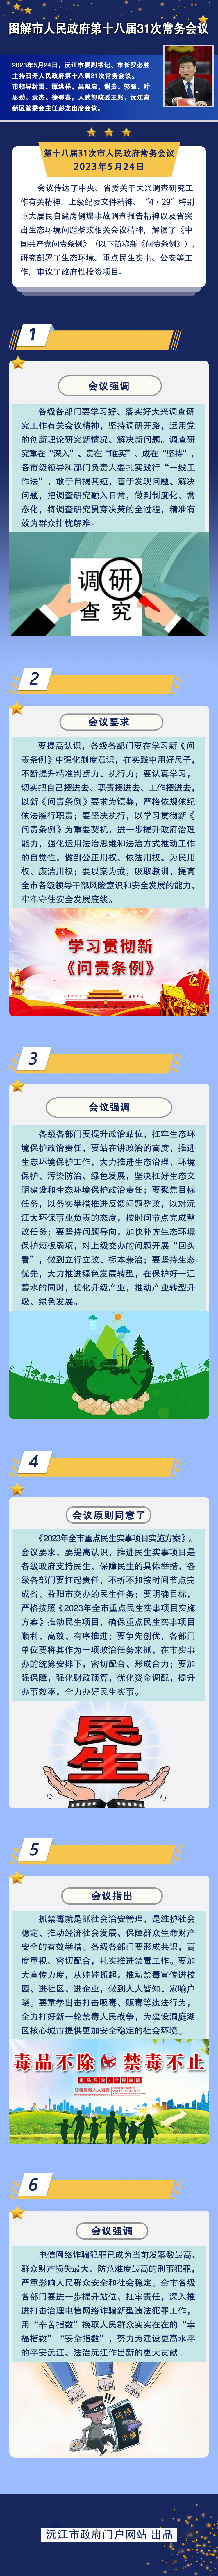 【图解】沅江市人民政府第十八届31次常务会议